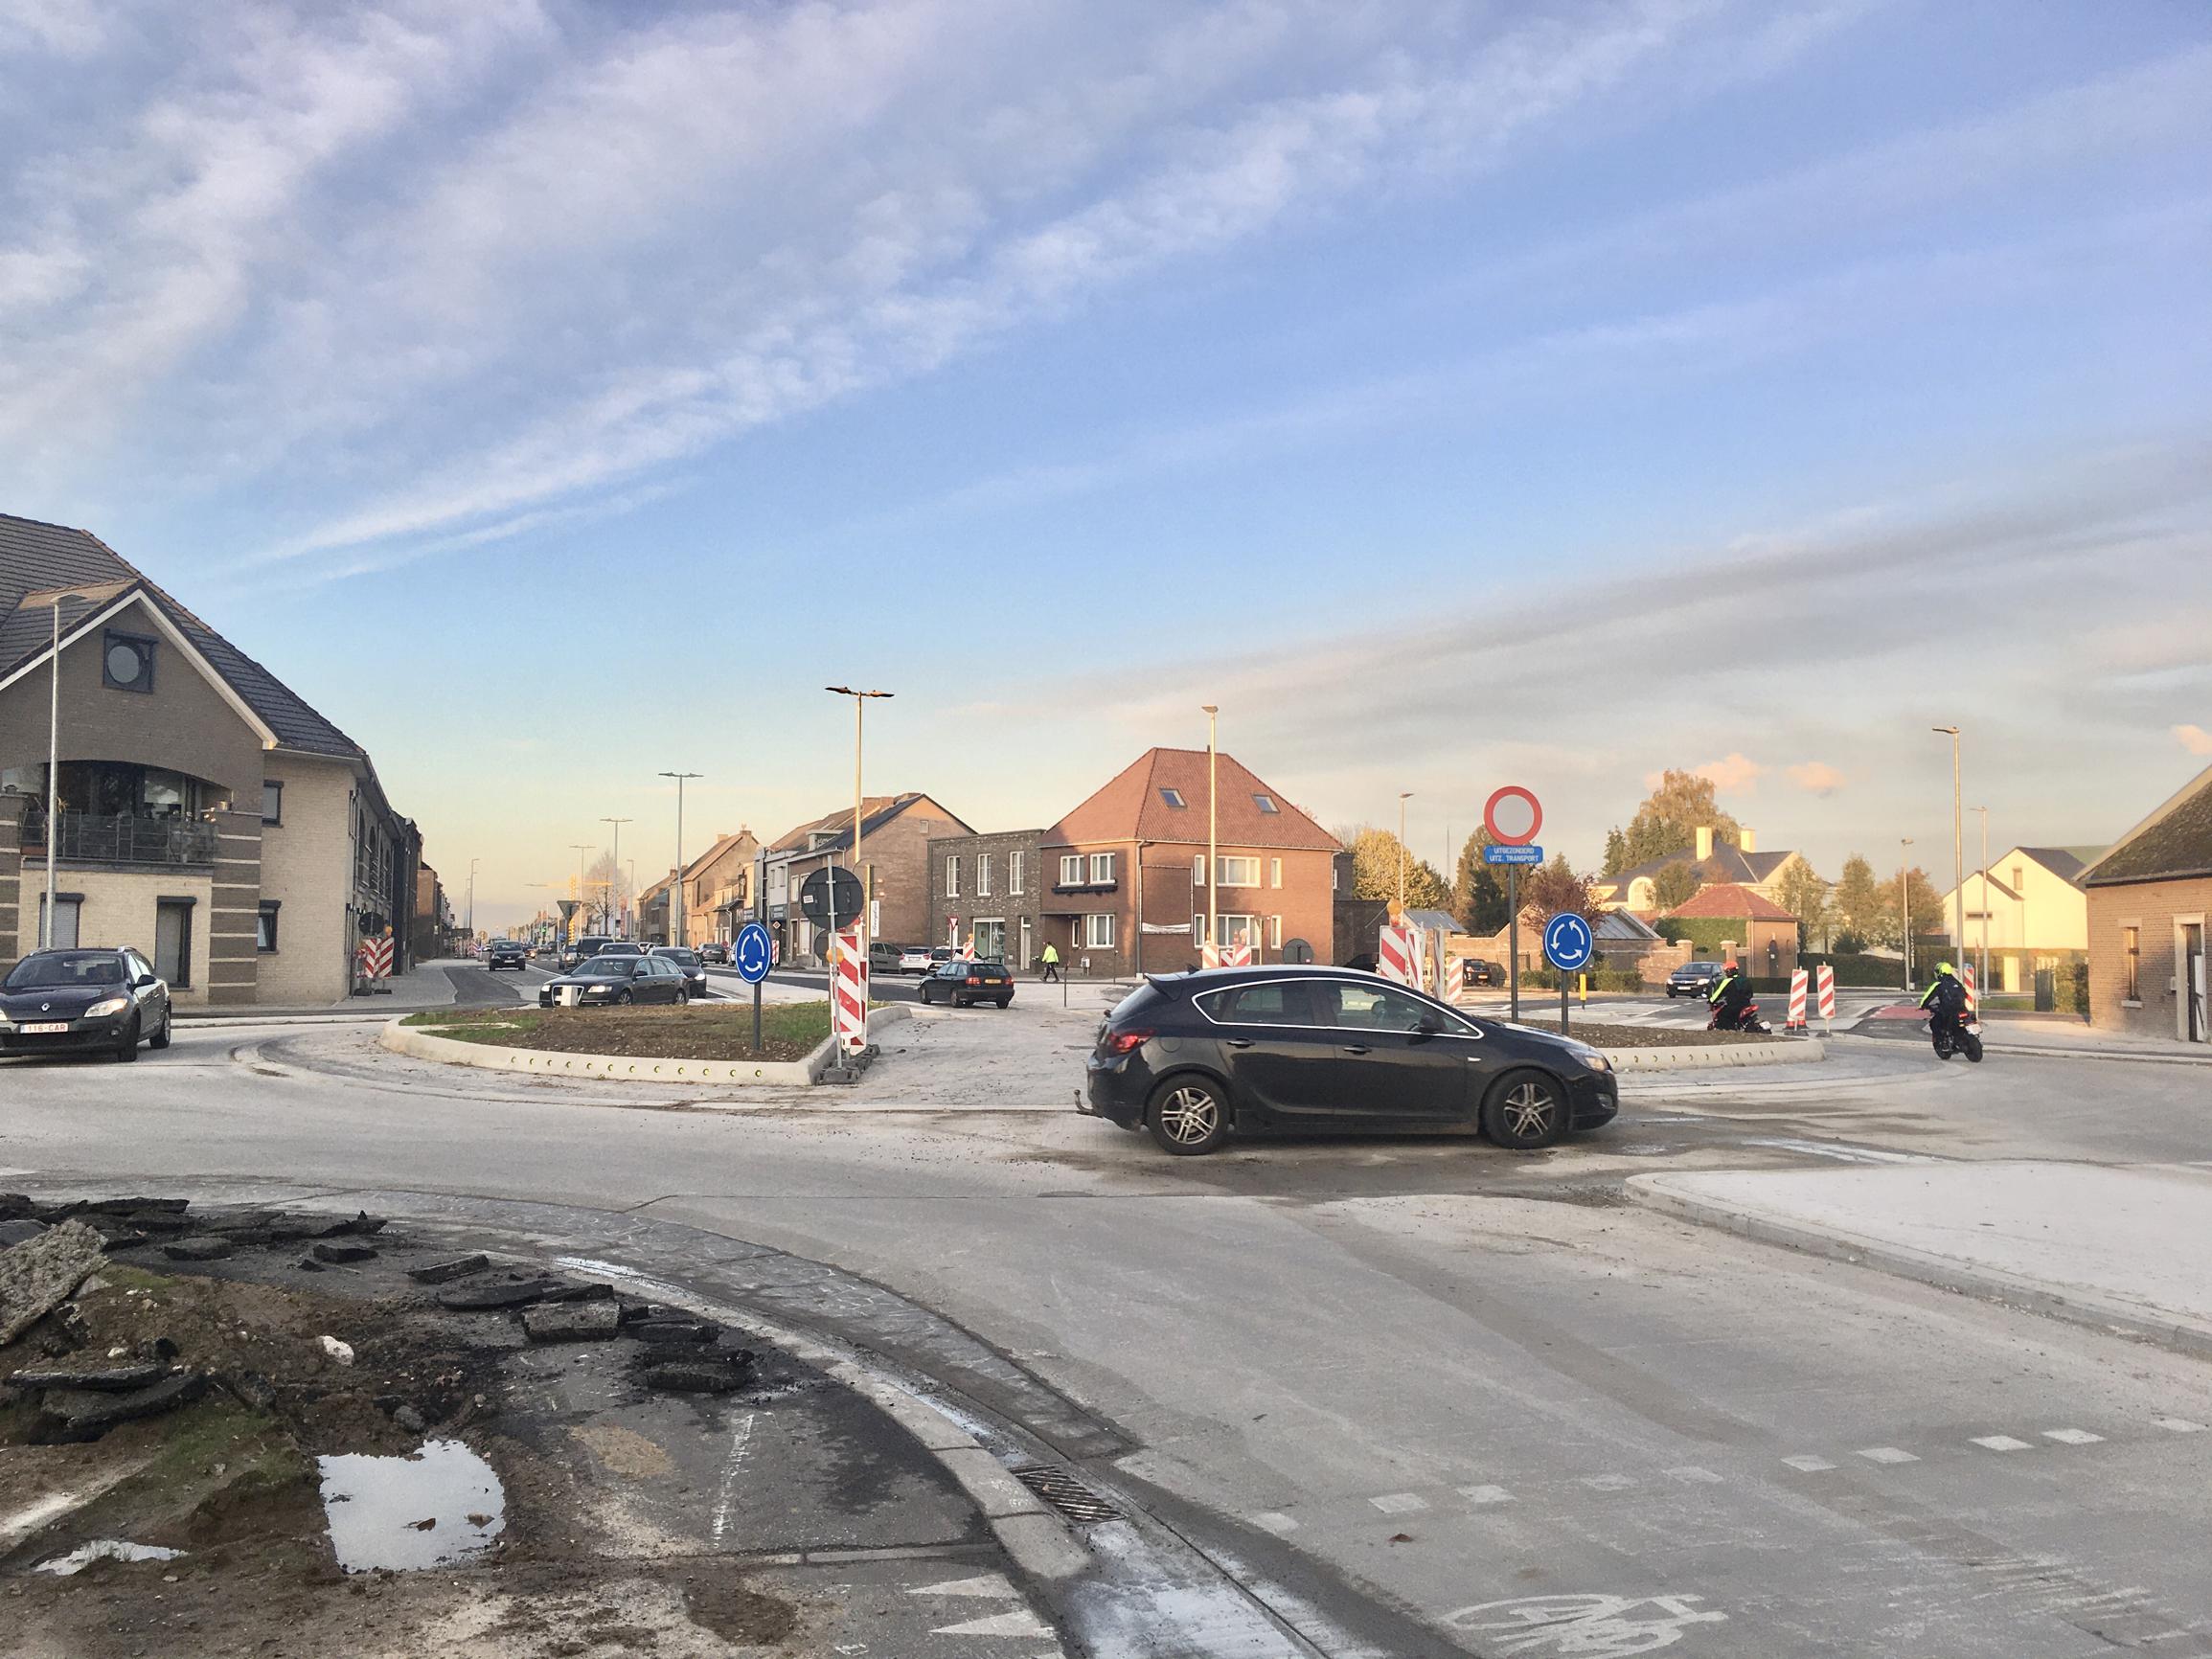 Rotonde op Steenweg in Rekem na zes maanden klaar - Het Belang van Limburg